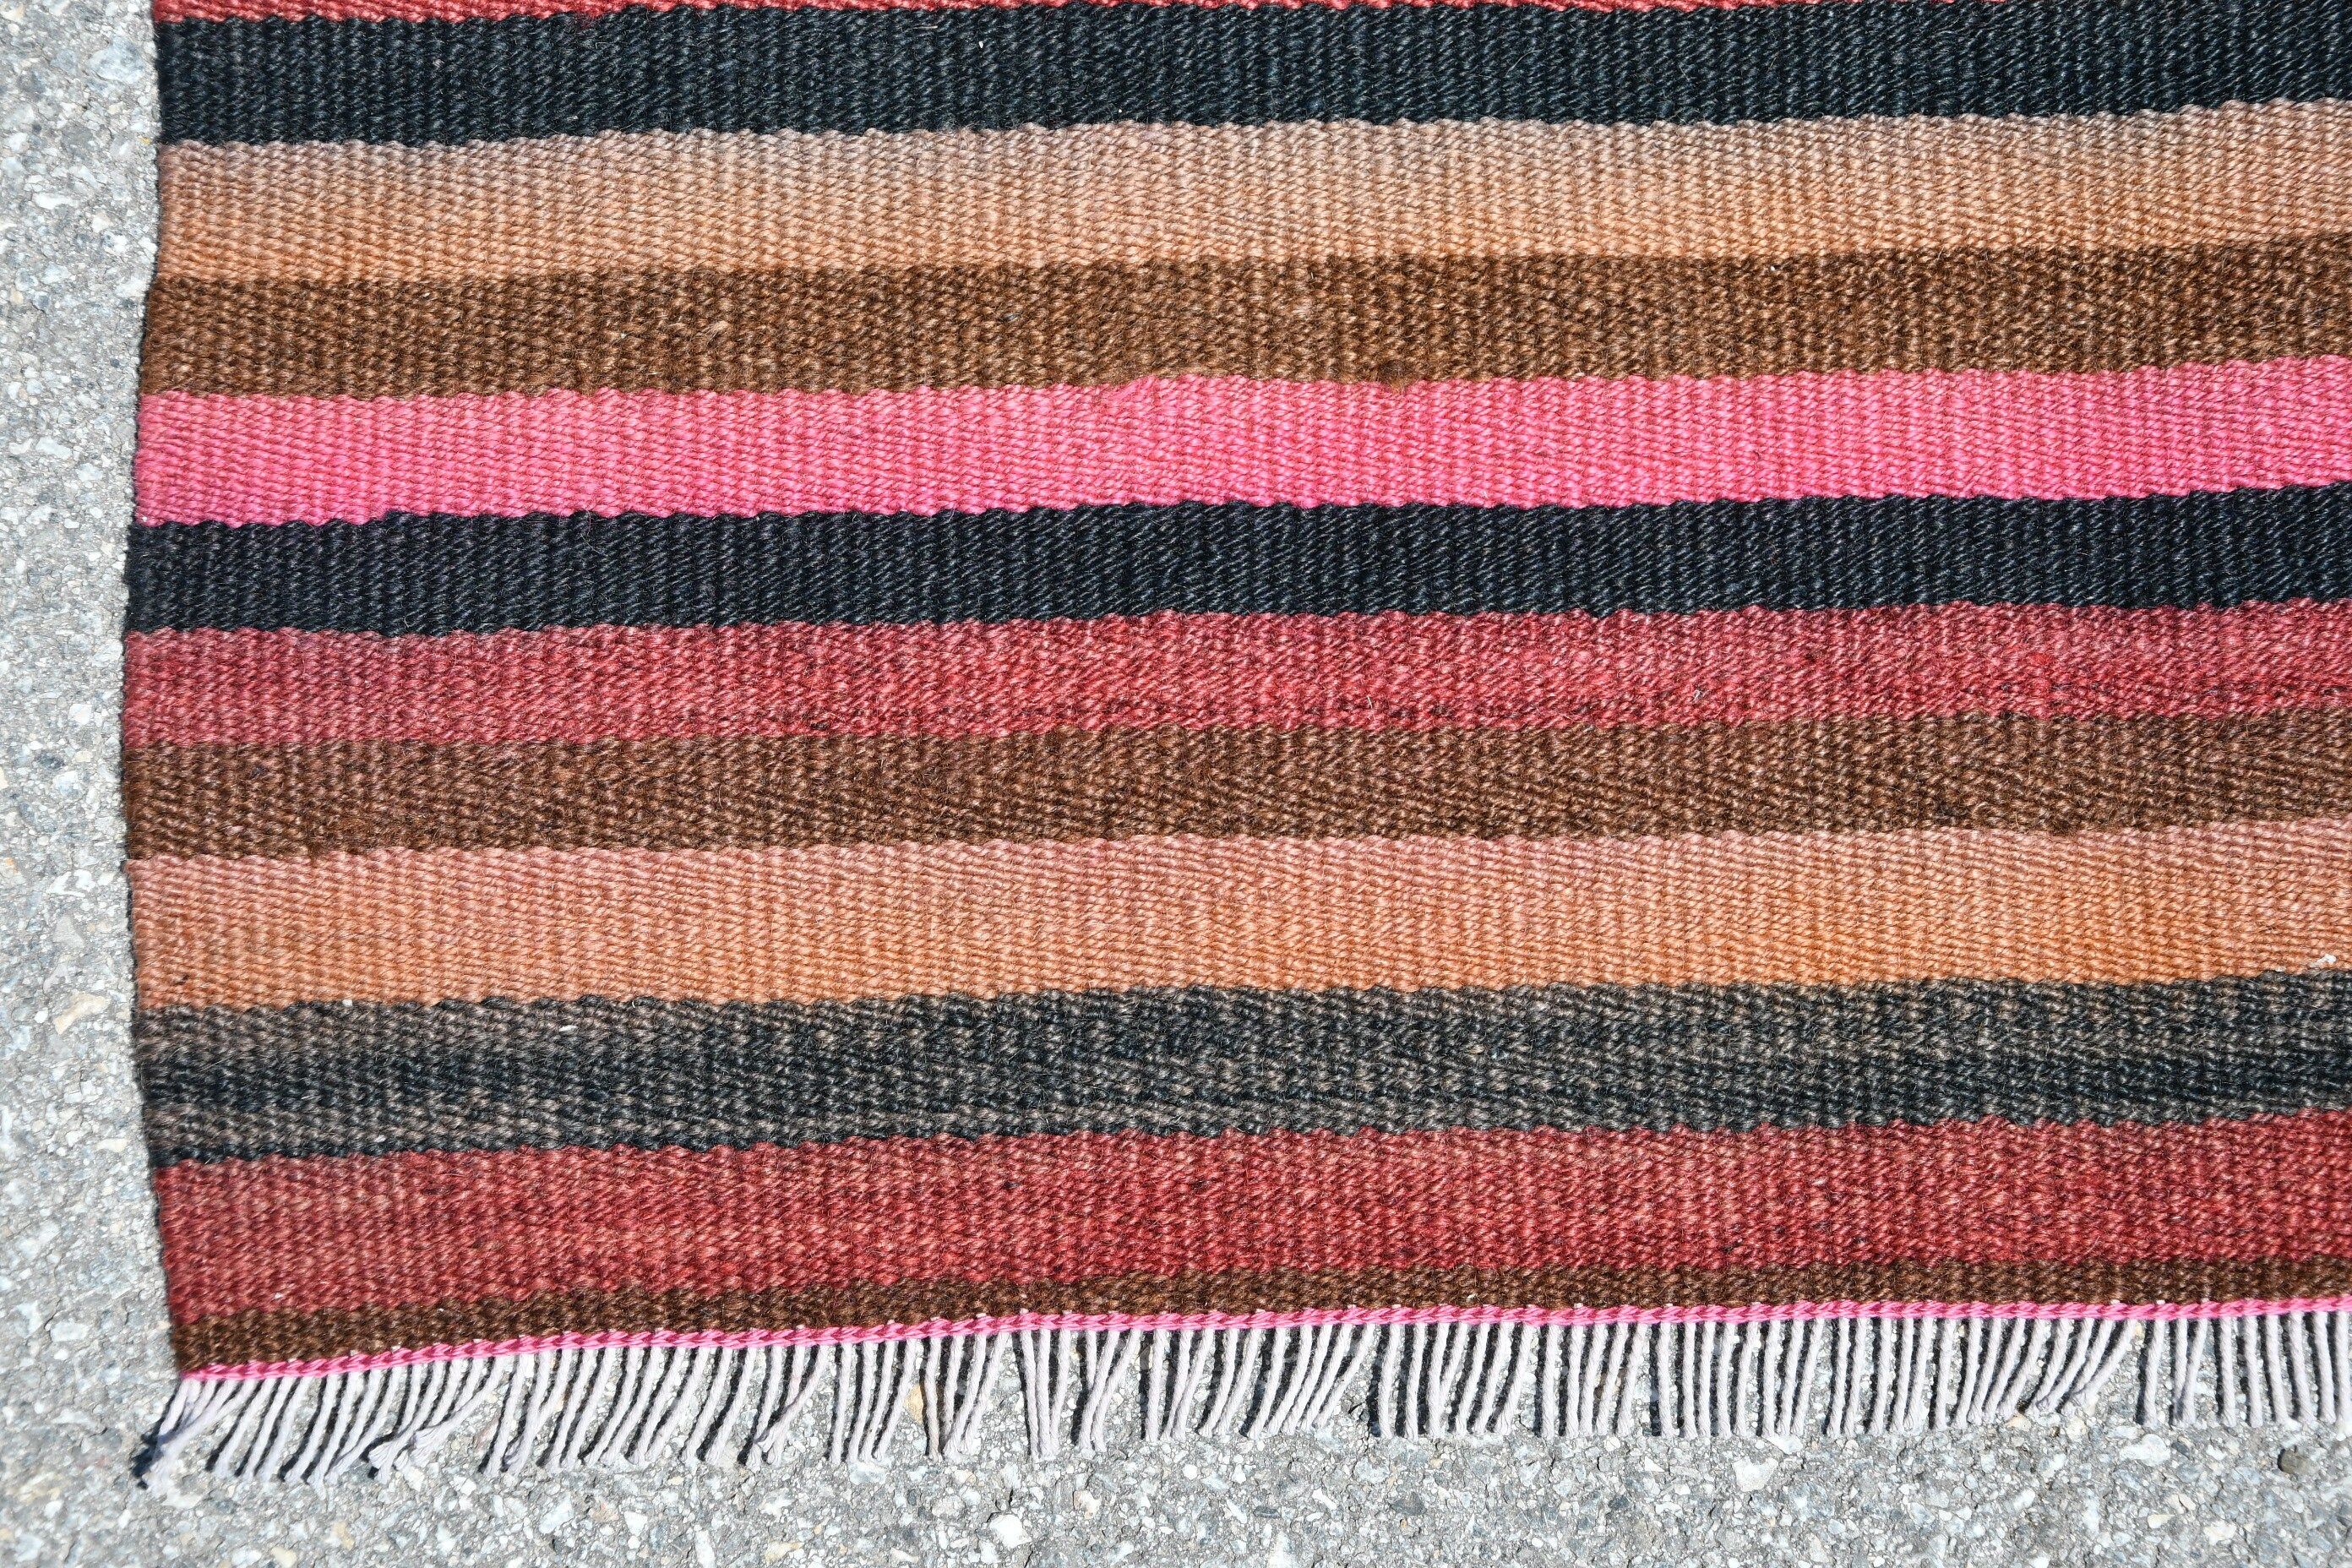 Vintage Rugs, Oushak Rug, Corridor Rug, Kitchen Rugs, 2.5x10 ft Runner Rug, Pink Bedroom Rug, Antique Rug, Turkish Rugs, Kilim, Retro Rugs